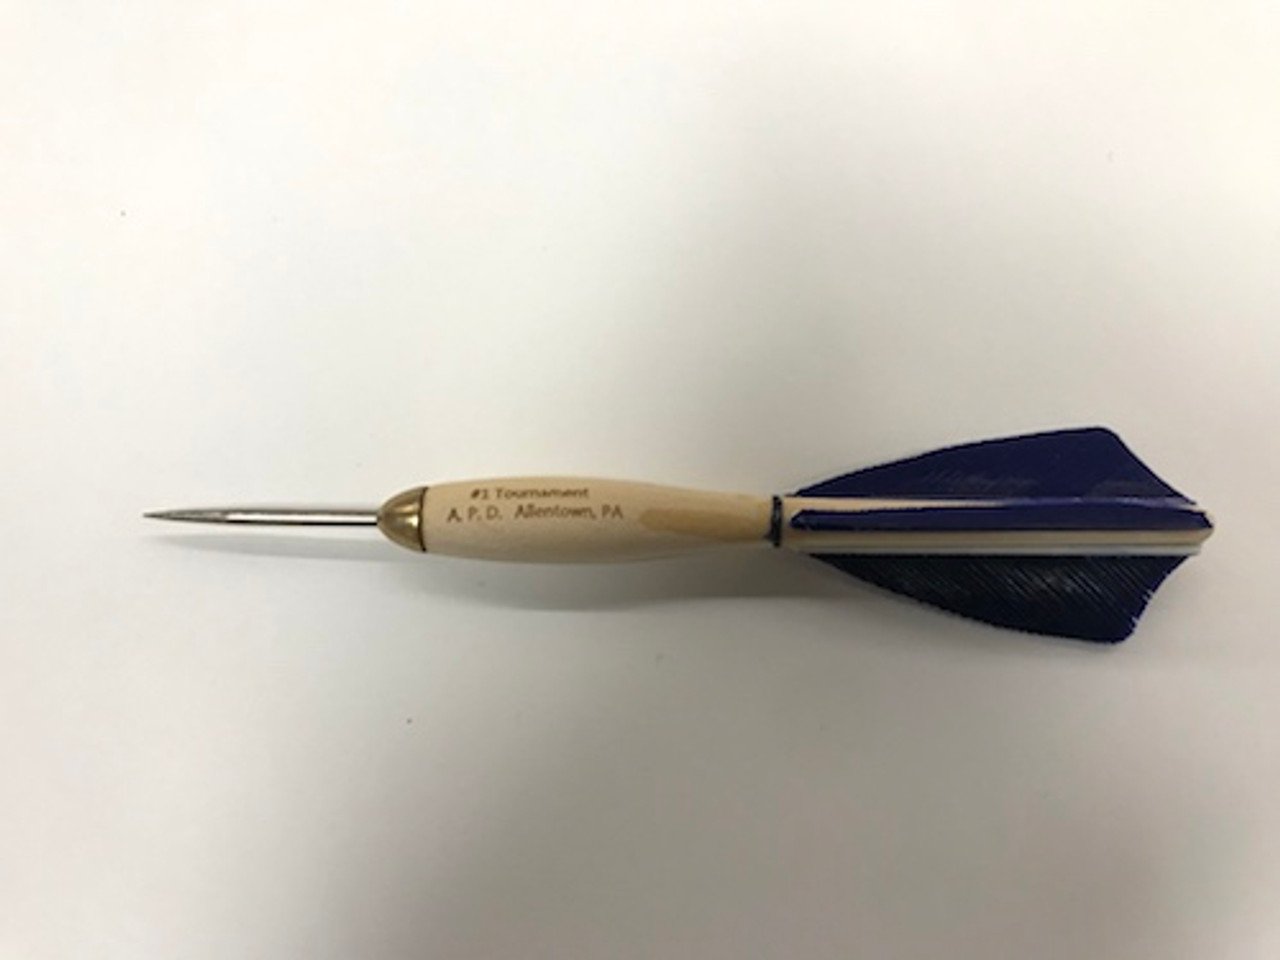 APD No.1 Tournament Darts Blue Feather (Dozen) - Gebhardts.com